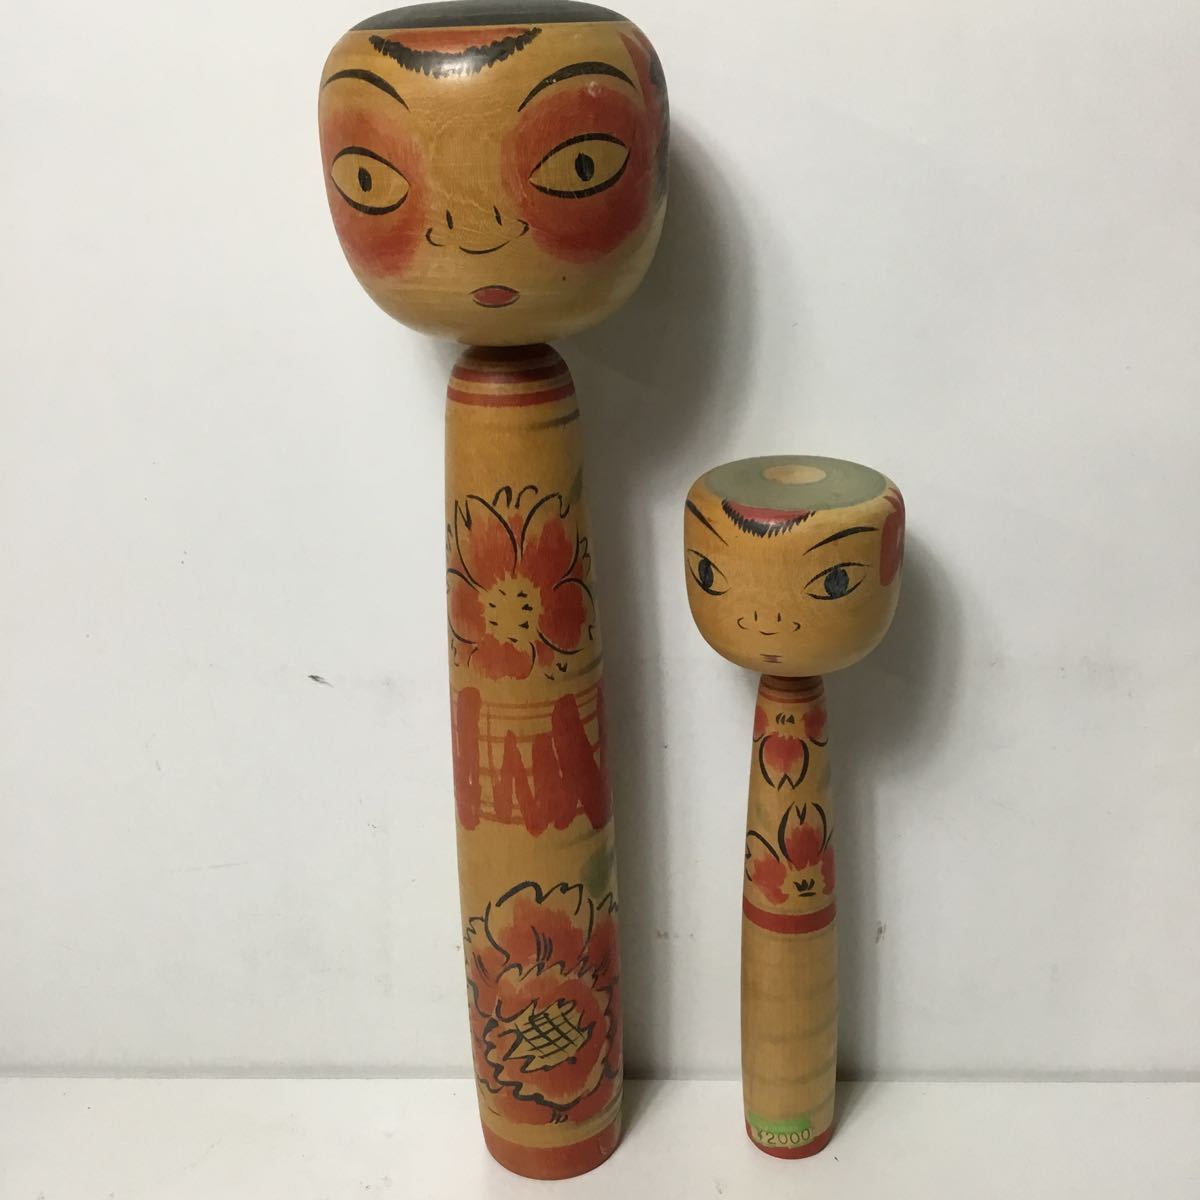 伝統こけし まとめて 2個セット 郷土玩具 伝統工芸 瀬谷重治 こけし 日本人形 骨董品 古玩 TS2A10